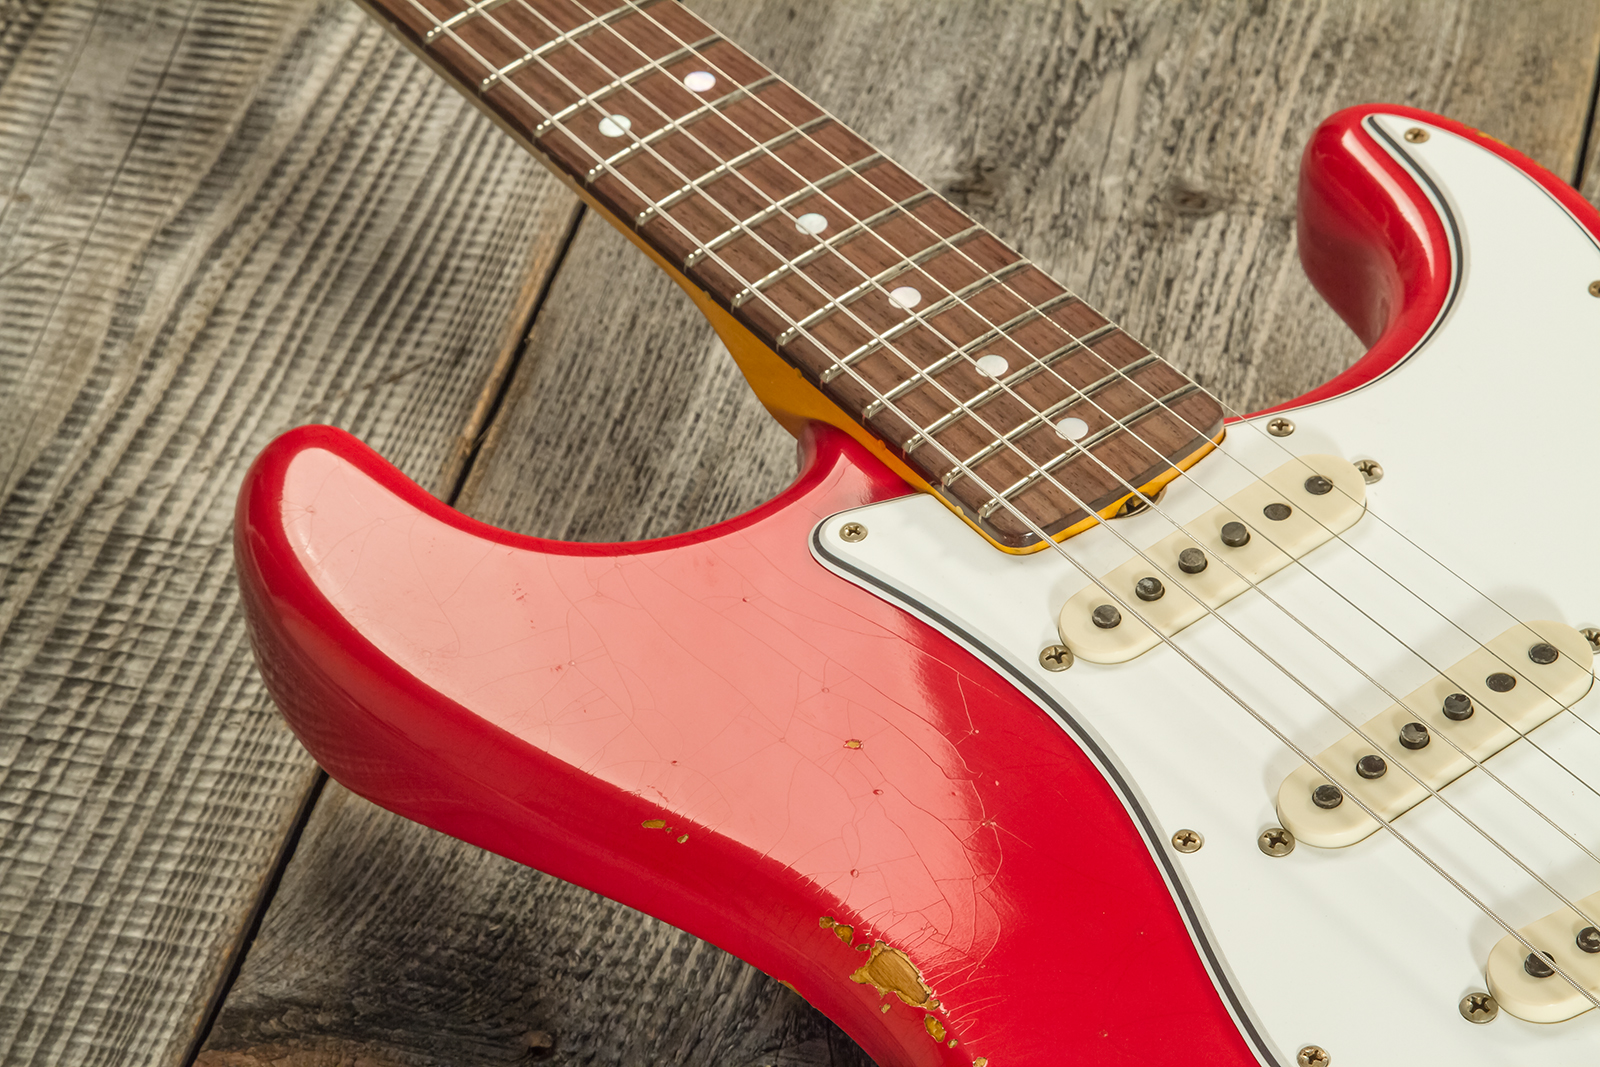 Fender Custom Shop Strat Late 1964 3s Trem Rw #cz568395 - Relic Aged Fiesta Red - Elektrische gitaar in Str-vorm - Variation 3